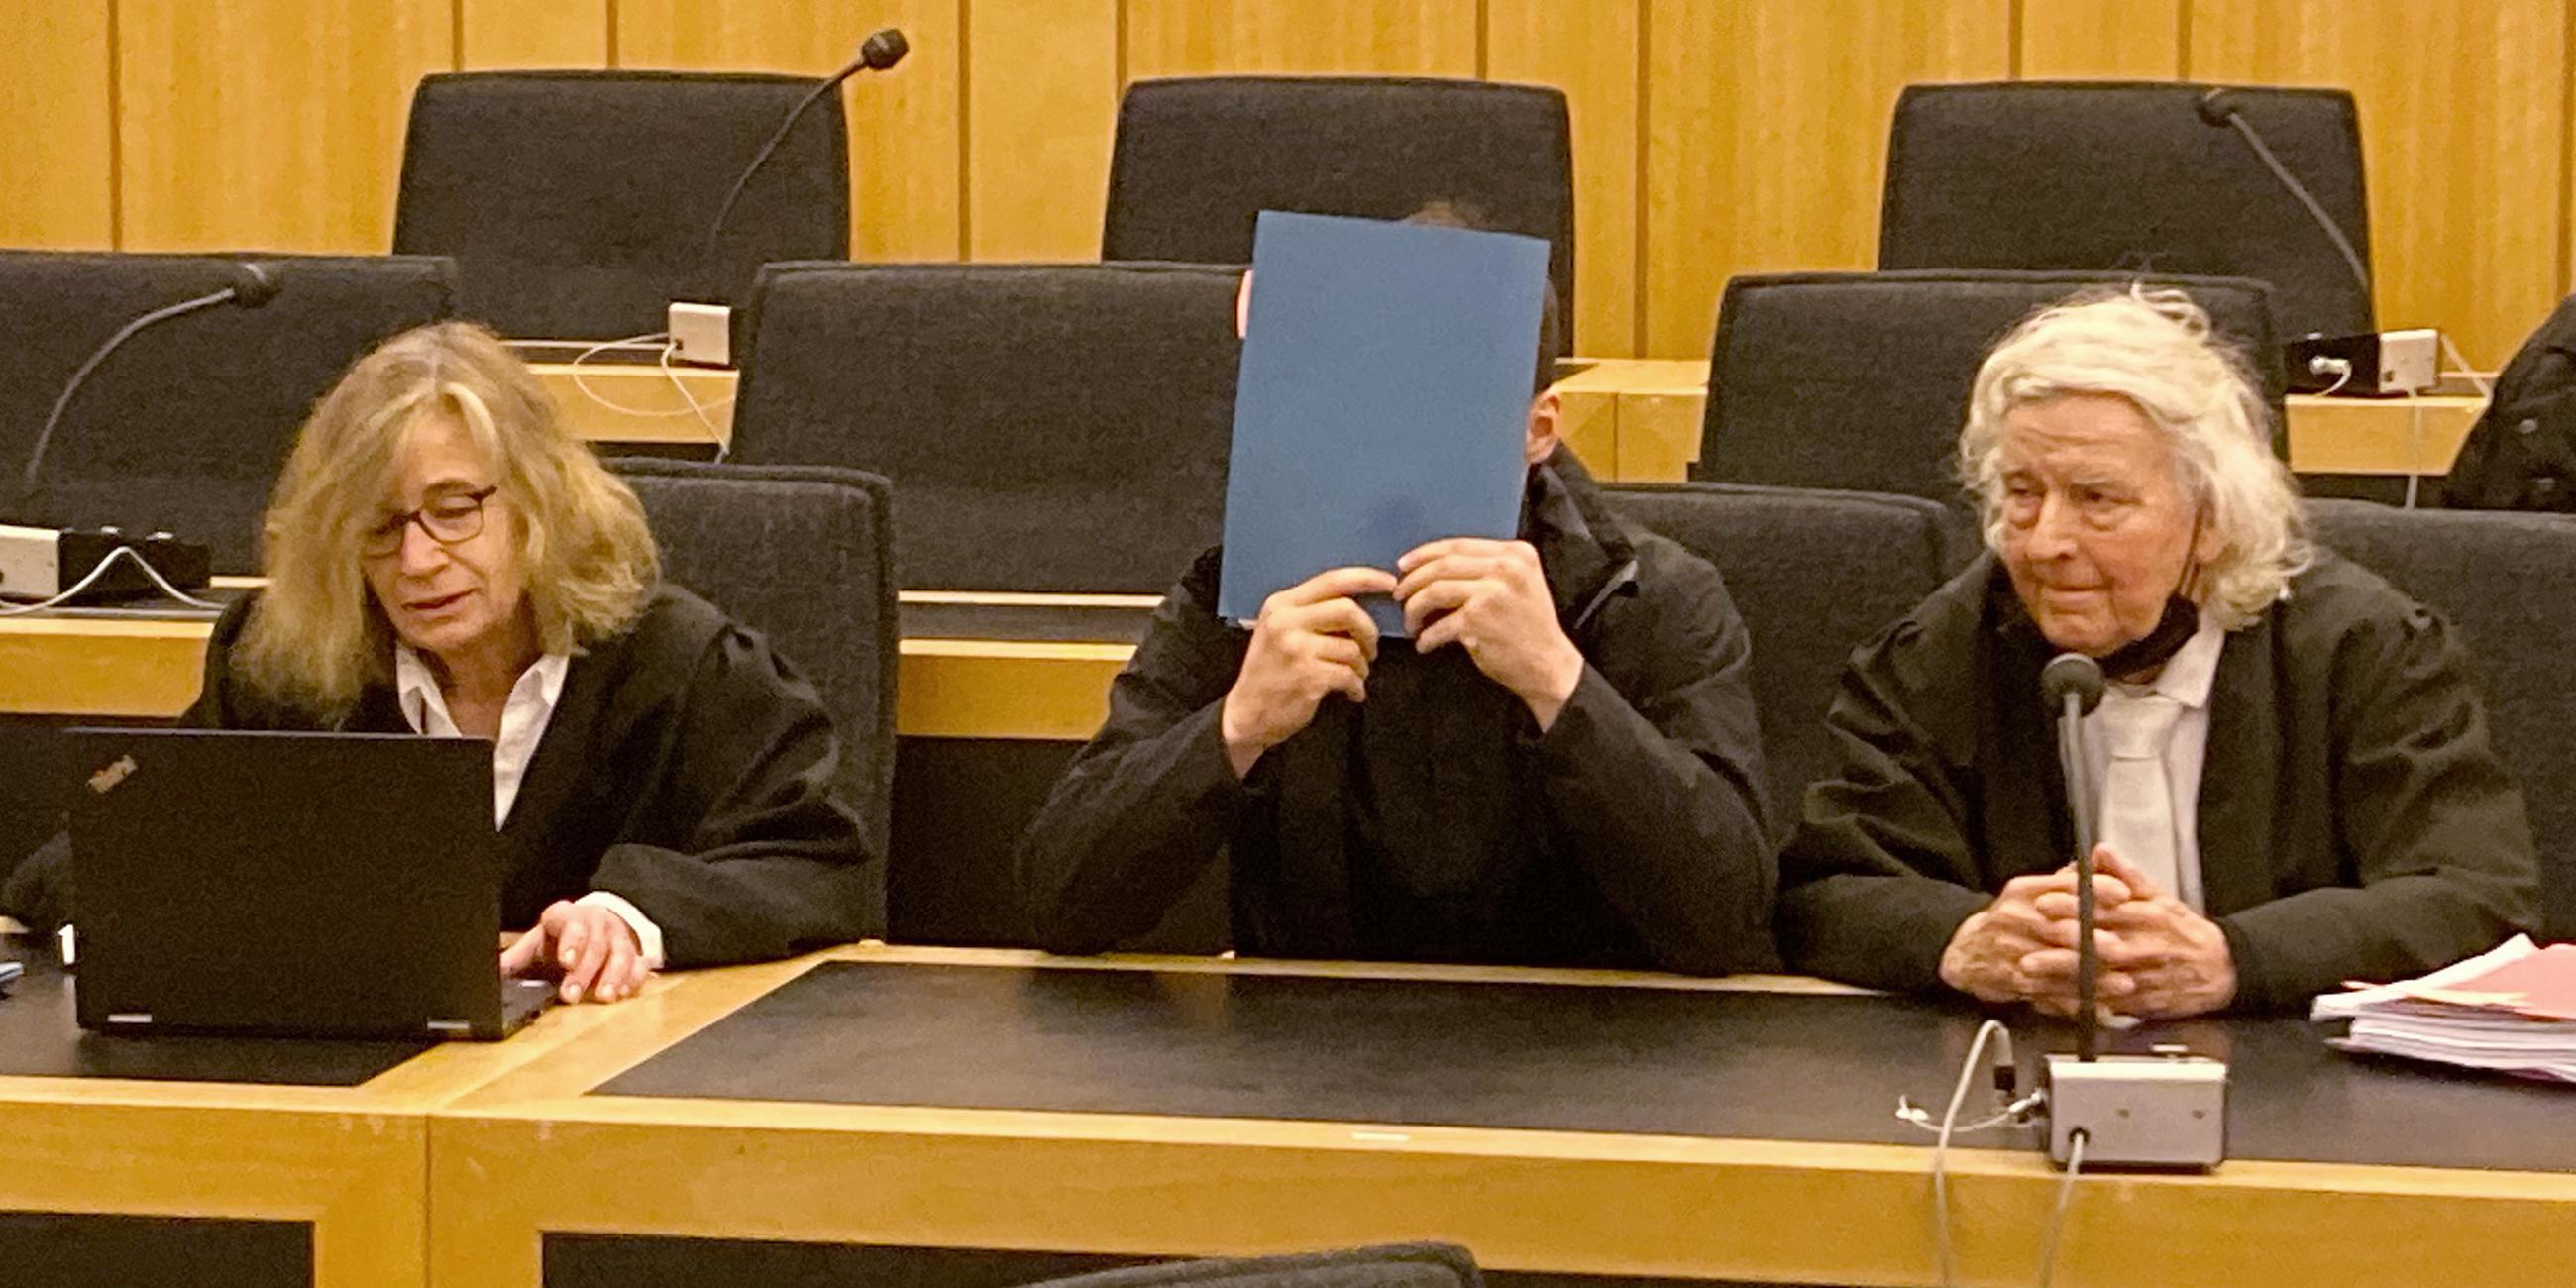 Der 20 Jahre alte Angeklagte sitzt zwischen seiner Pflichtverteidigerin Ulrike Baumann (l) und dem Anwalt Siegmund Benecken (r) im Gerichtssaal. 